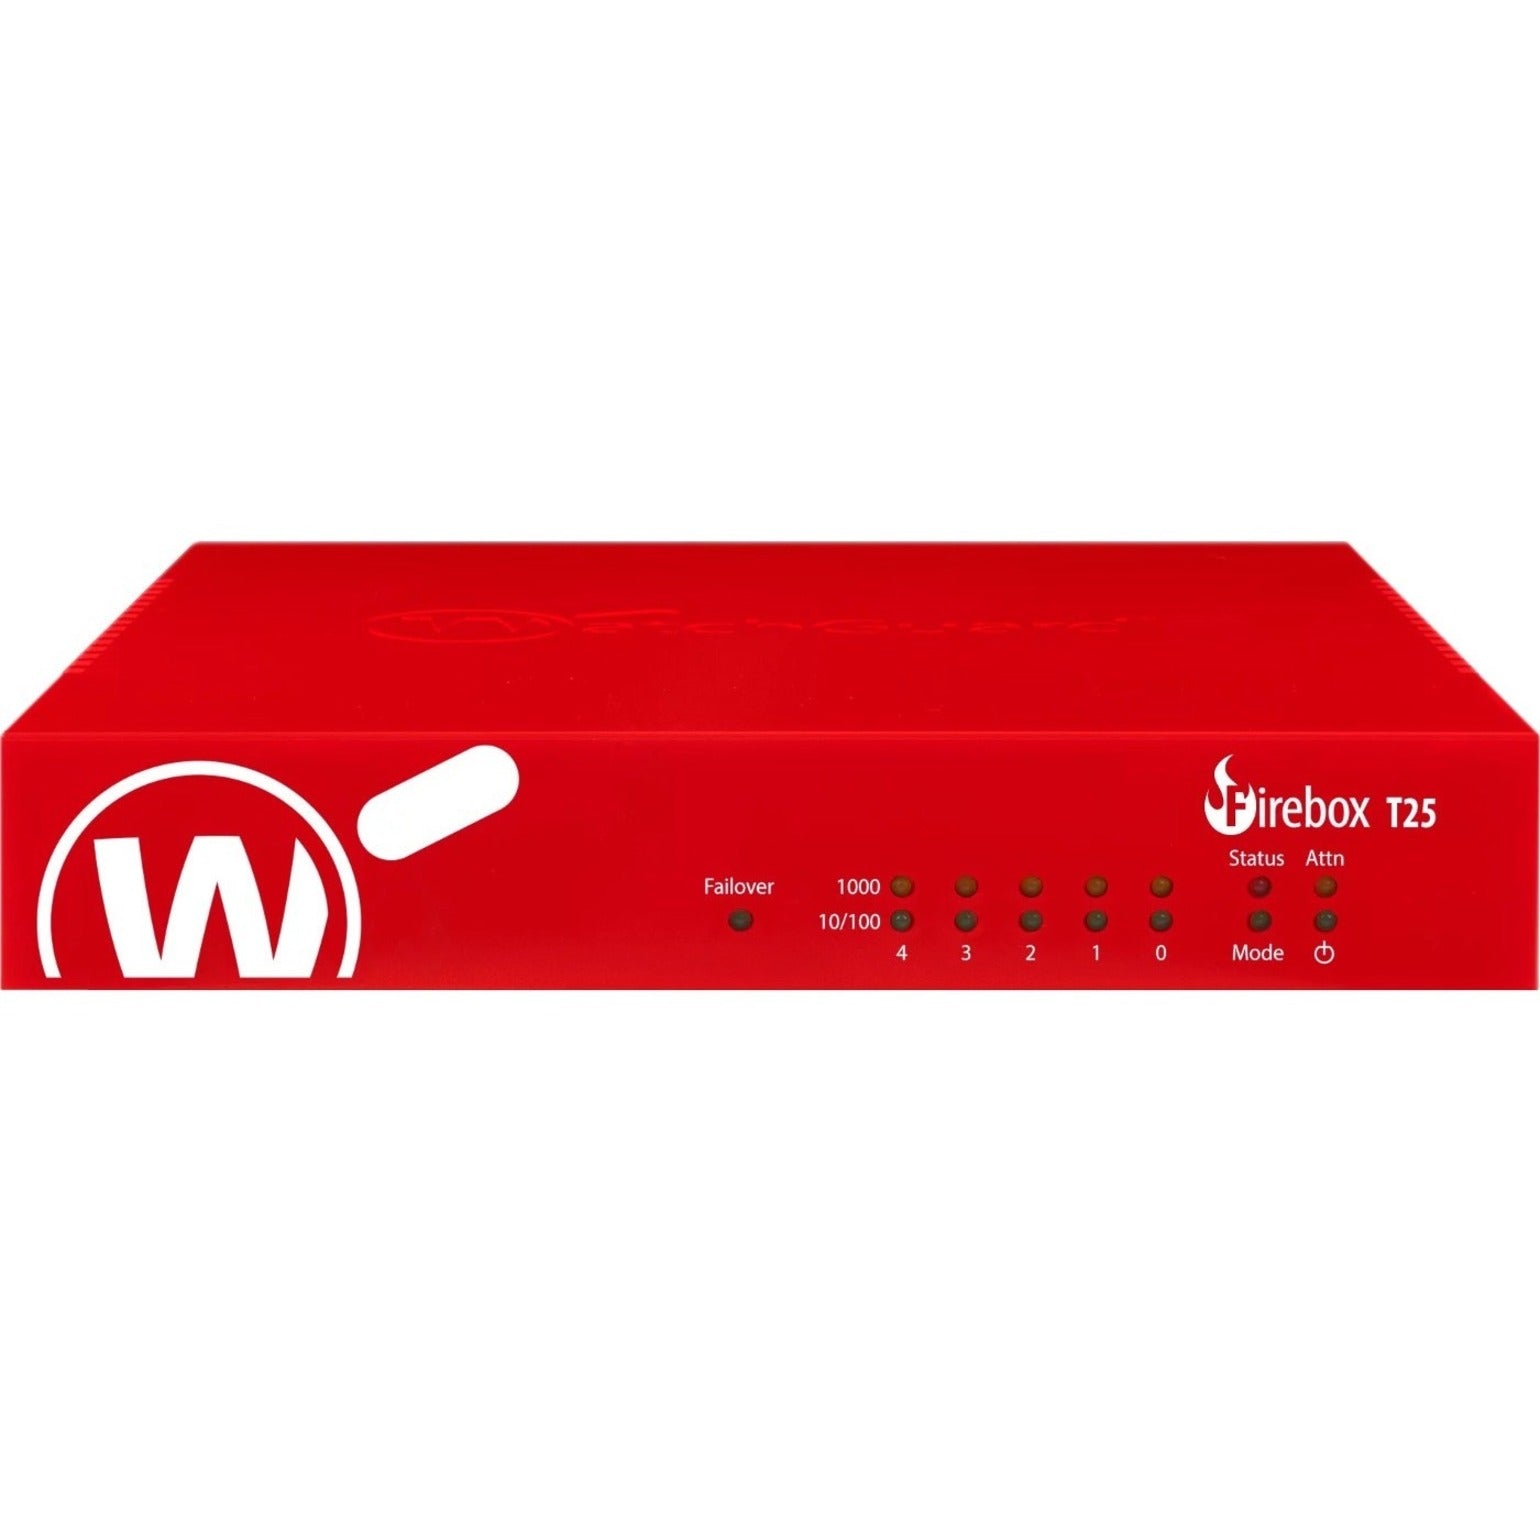 WatchGuard WGT26005 Firebox T25-W Network Security/Firewall Appliance, 5-Year Standard Support, Gigabit Ethernet, IEEE 802.11ax Wireless LAN